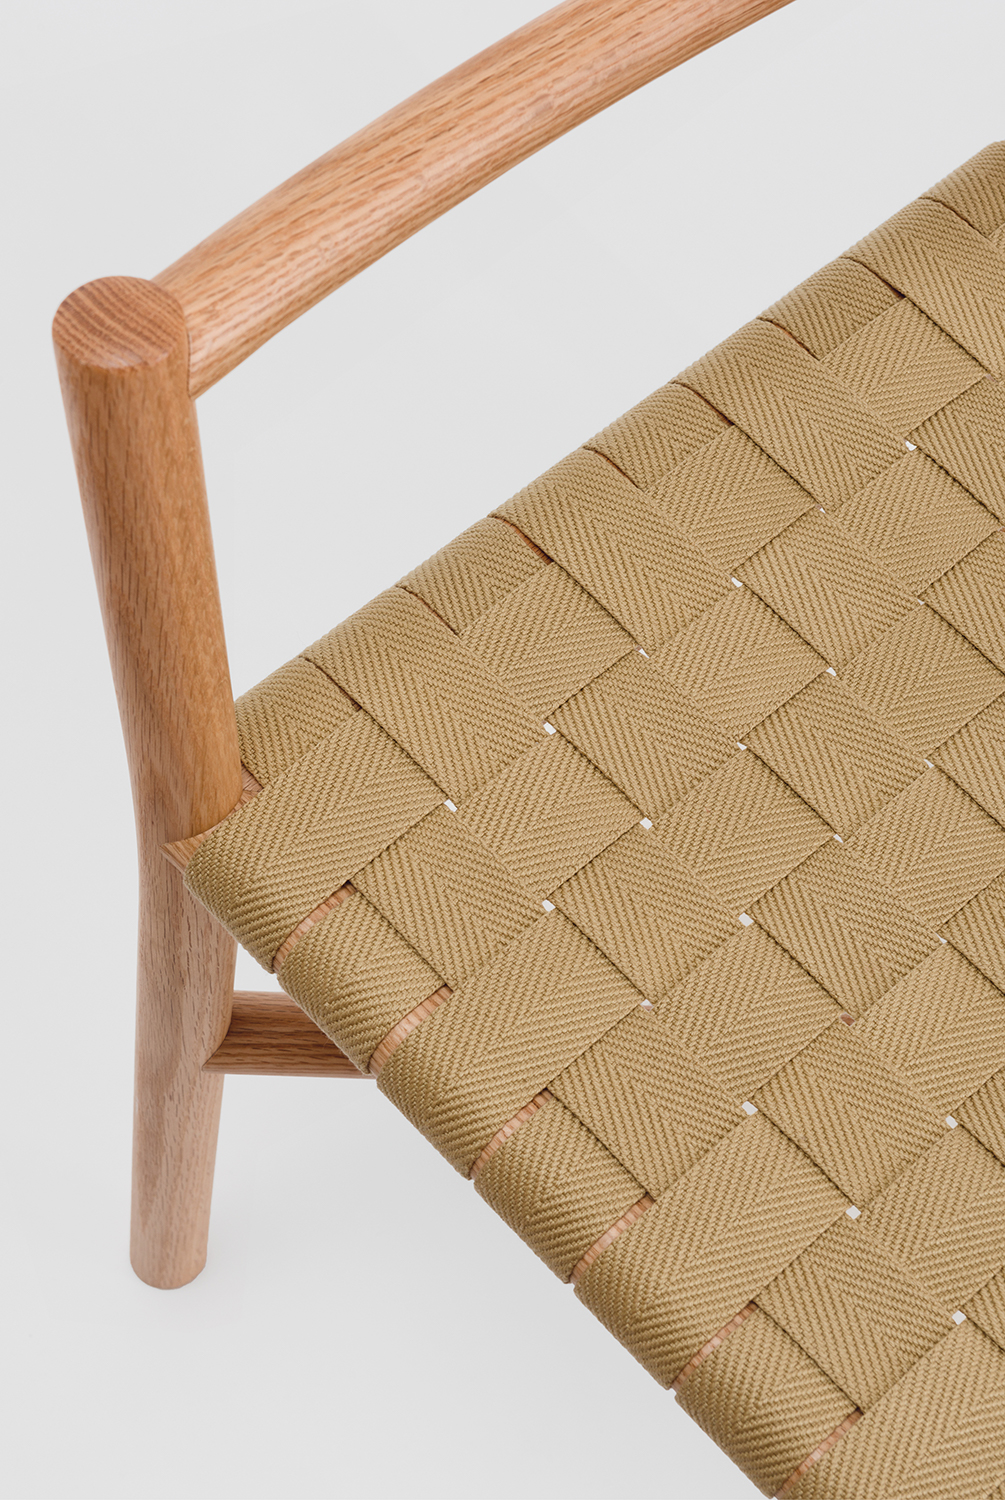 Ariake_Detail_Ariake_Chair_Textile_Strap.jpg